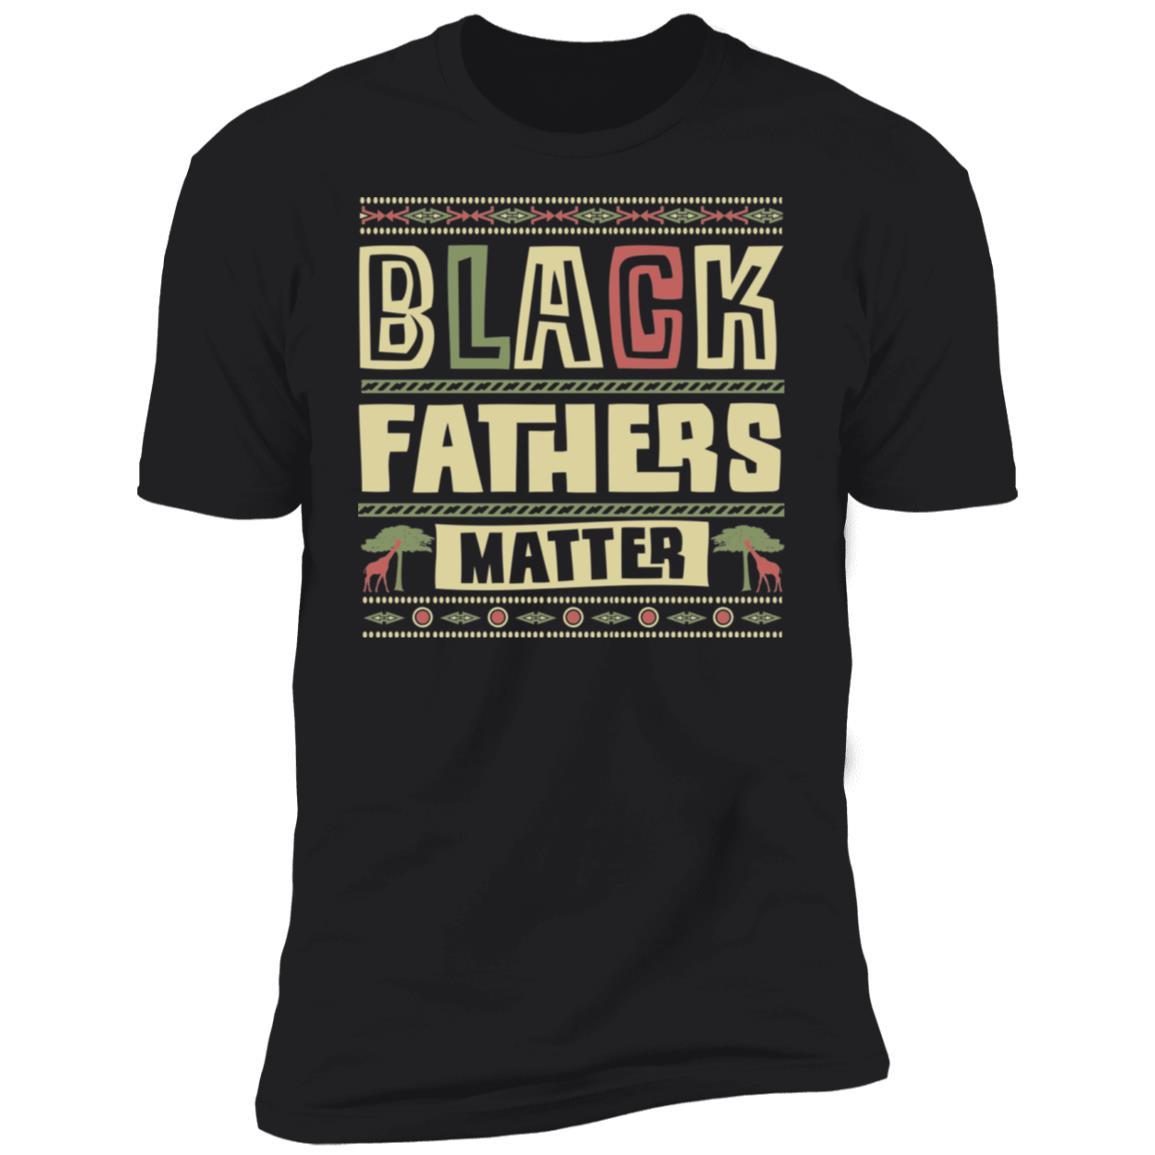 Black Fathers Matter Apparel CustomCat Premium T-shirt Black X-Small